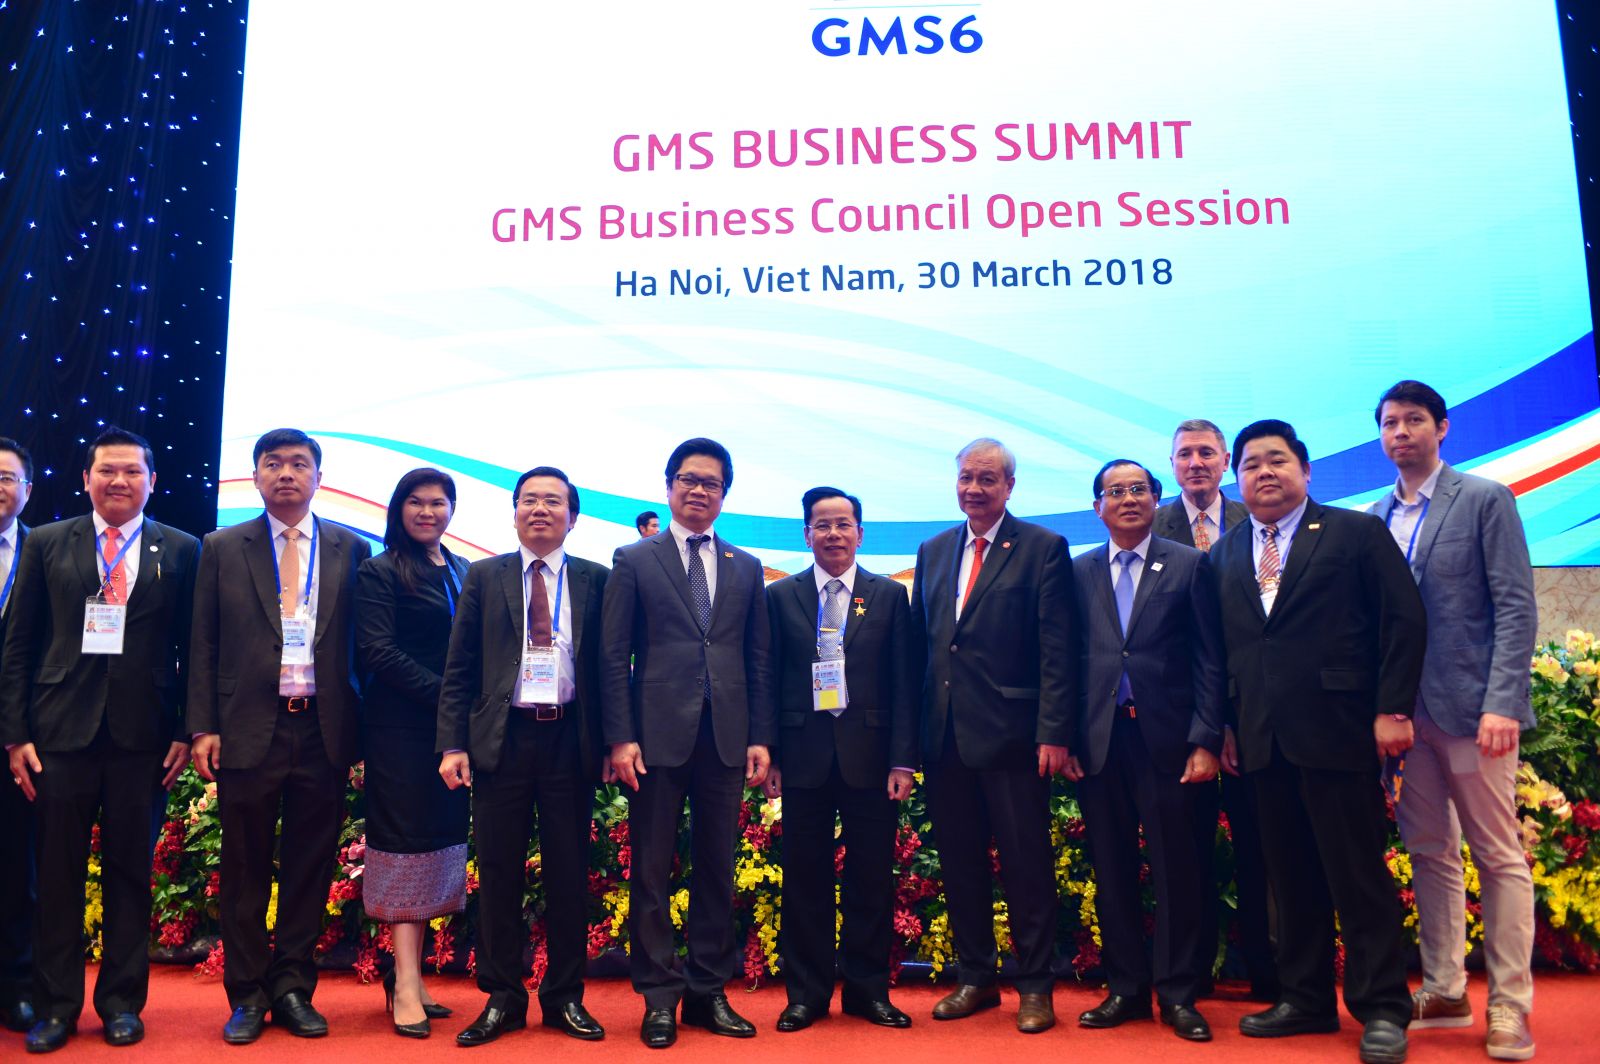 Diễn đàn Thượng đỉnh Kinh doanh GMS: “Chung một dòng sông”, kết nối cộng đồng kinh doanh